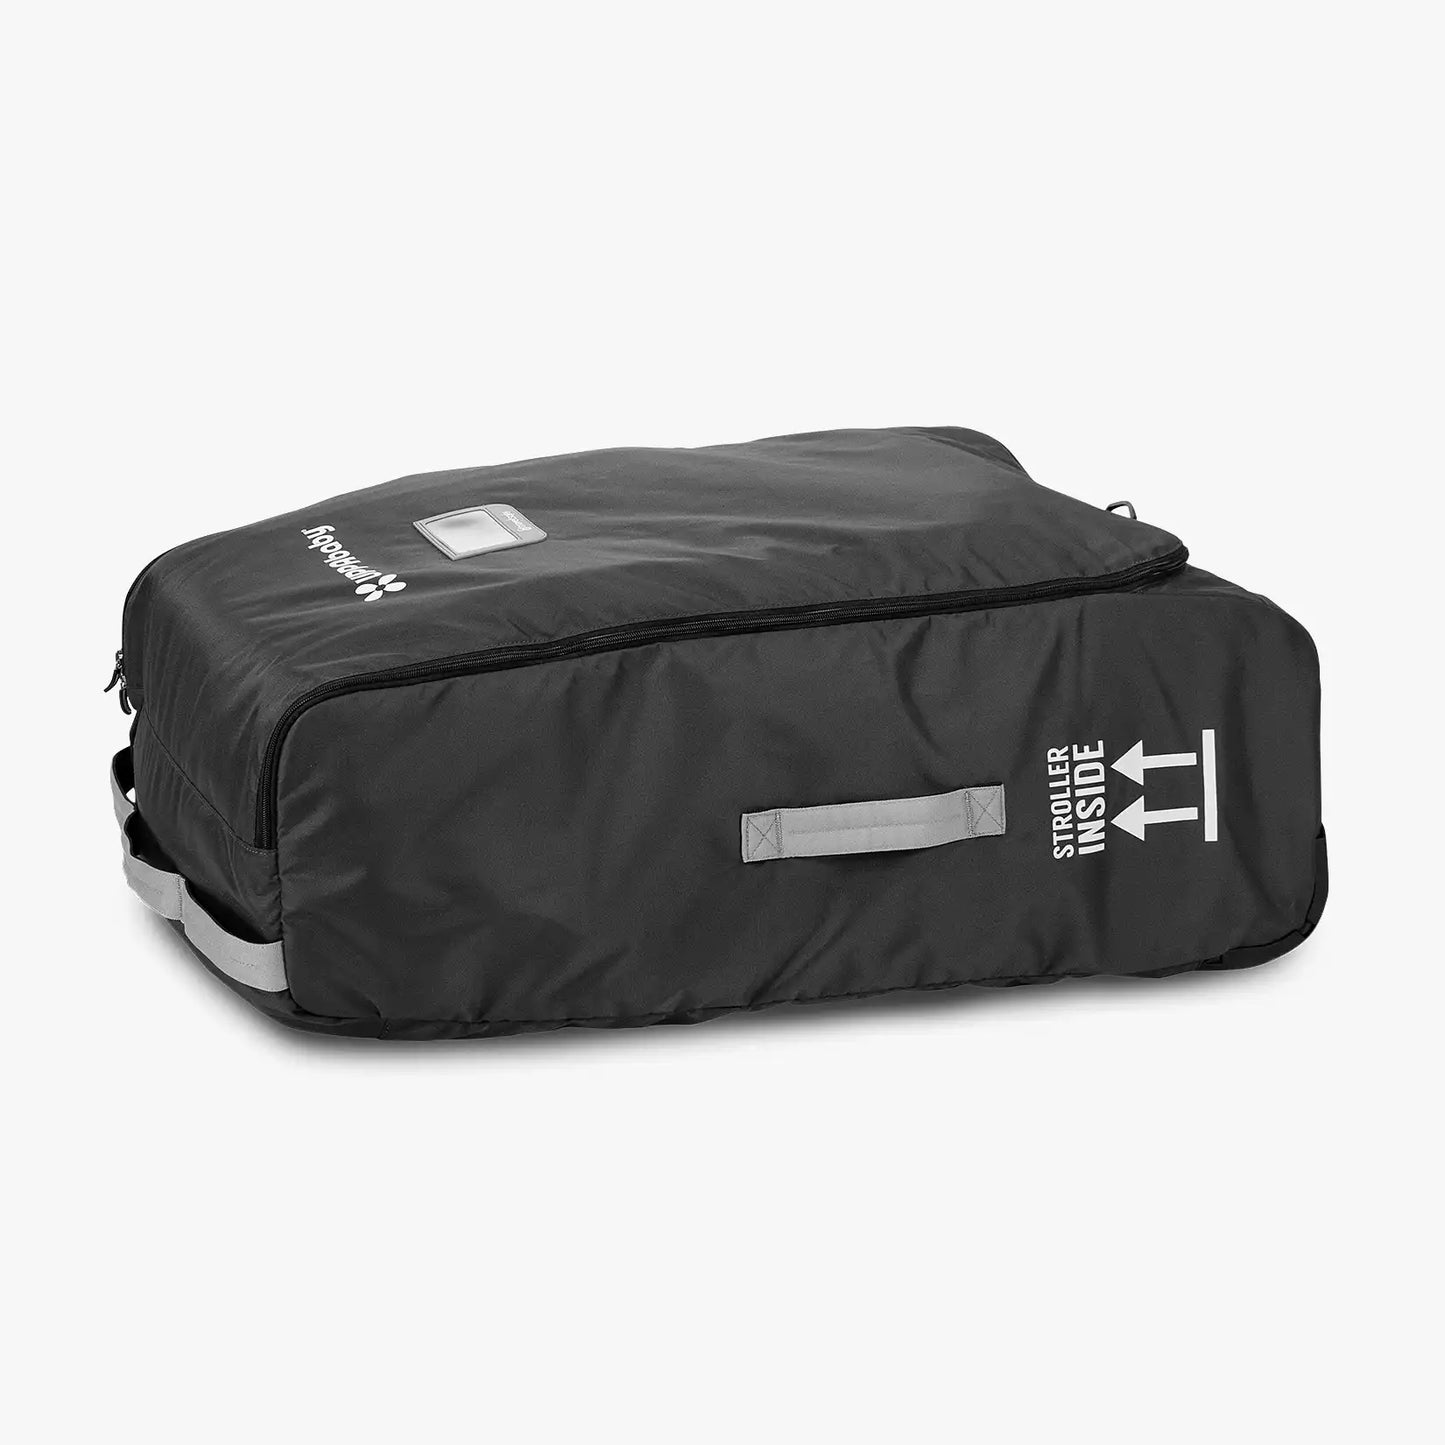 Vista/Cruz V2 Travel Bag